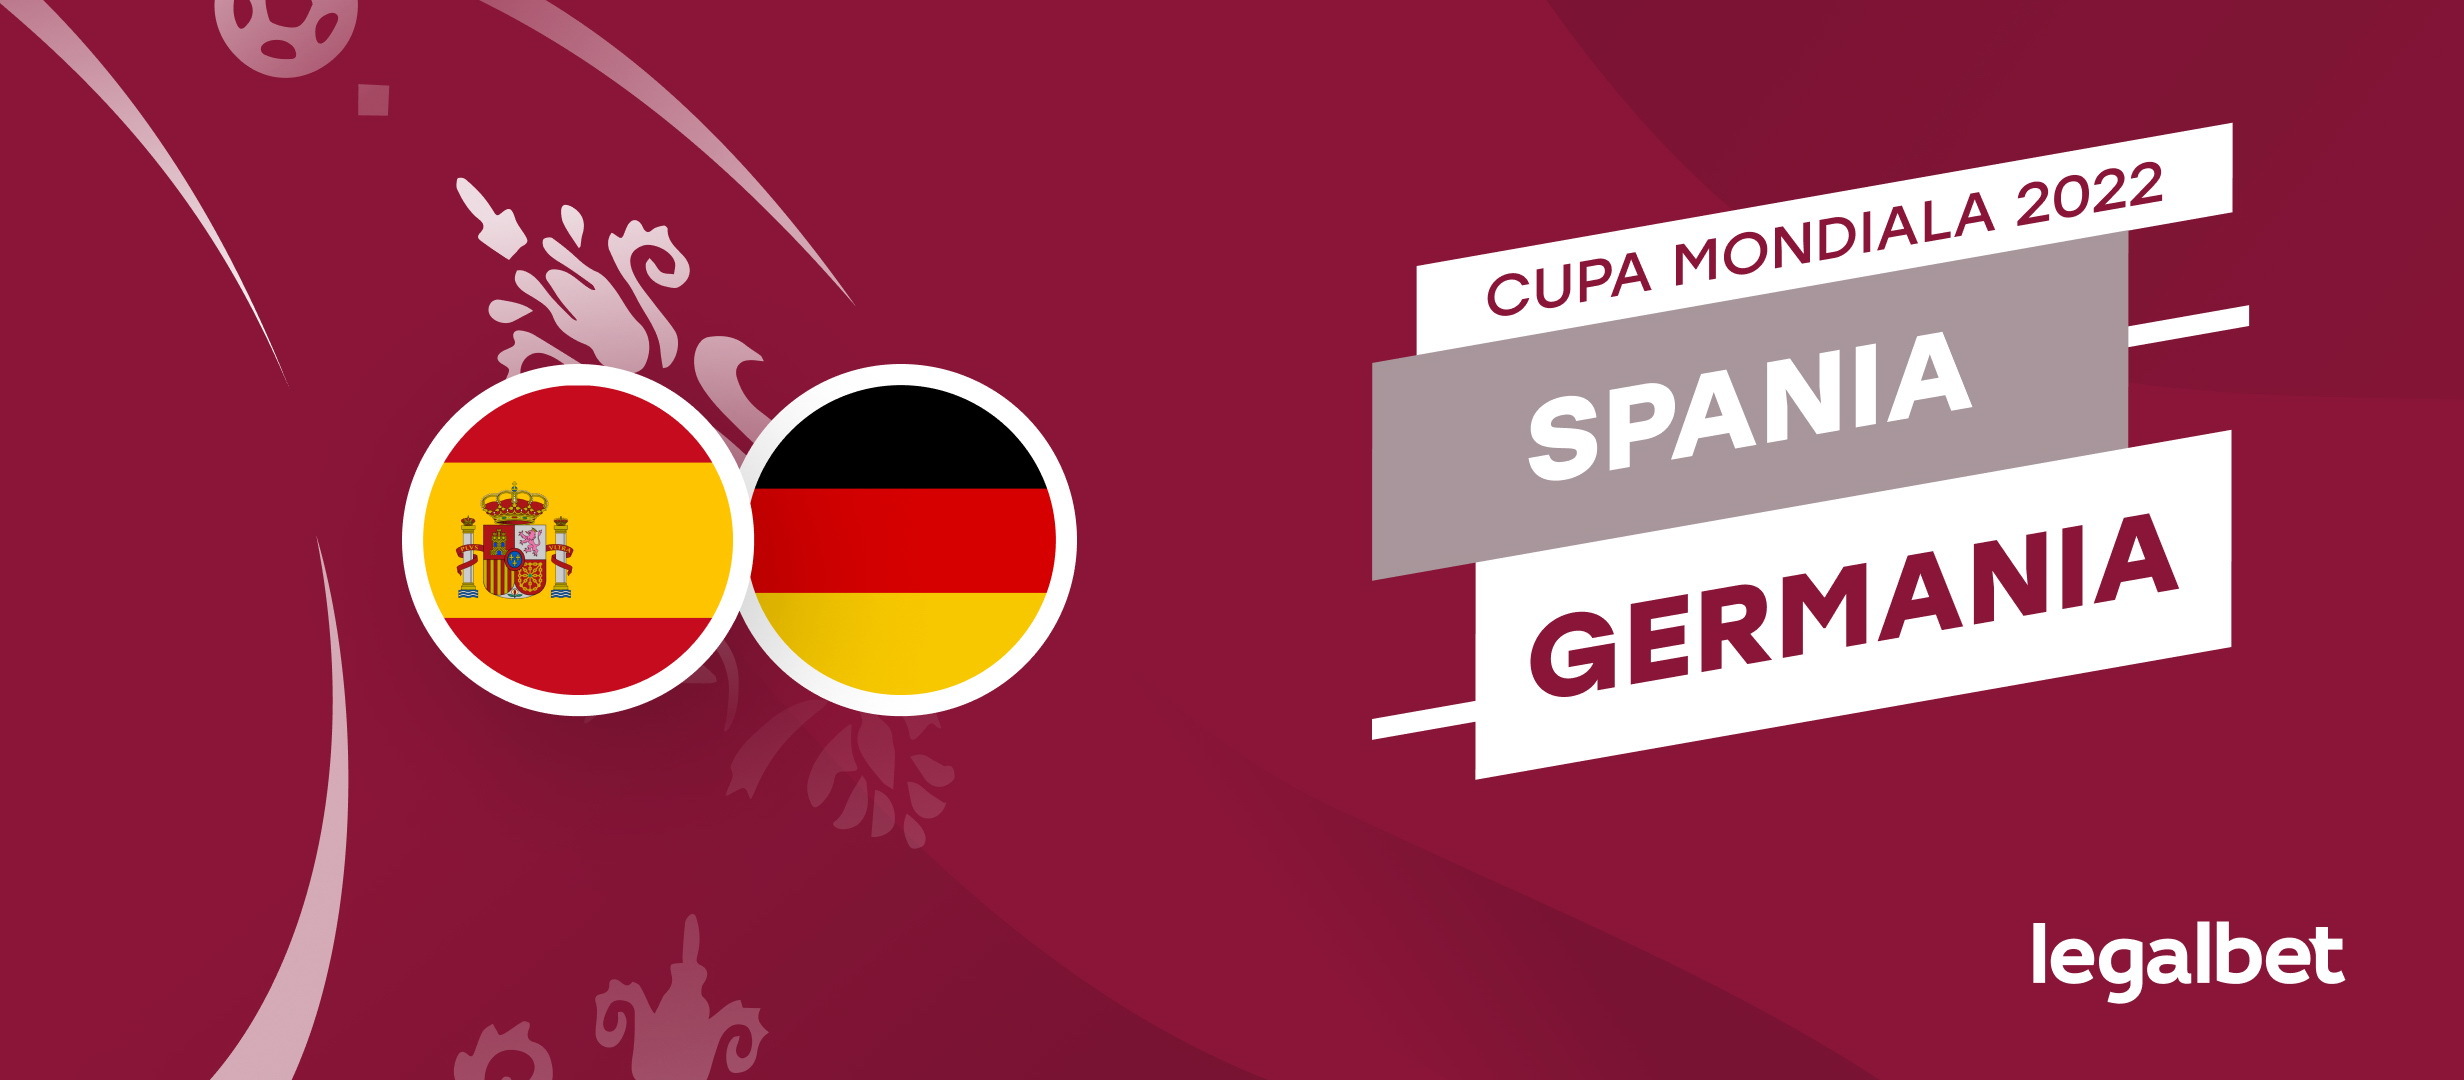 Spania vs Germania – cote la pariuri, ponturi si informatii